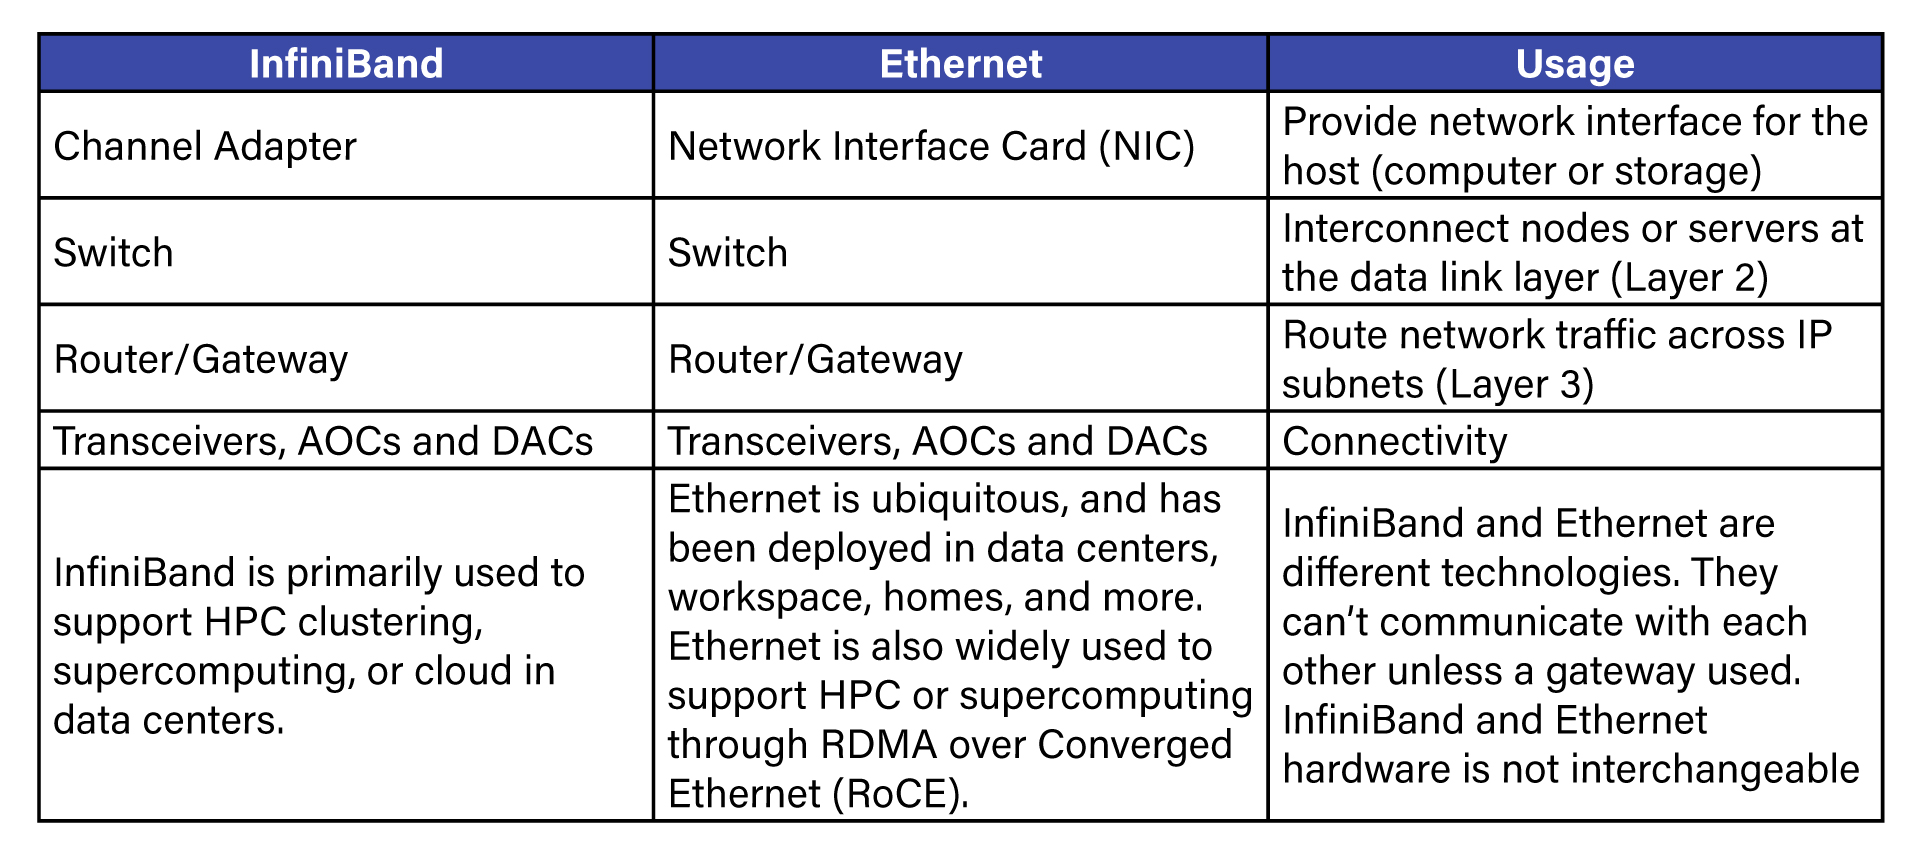 Infiniband vs Ethernet Usage